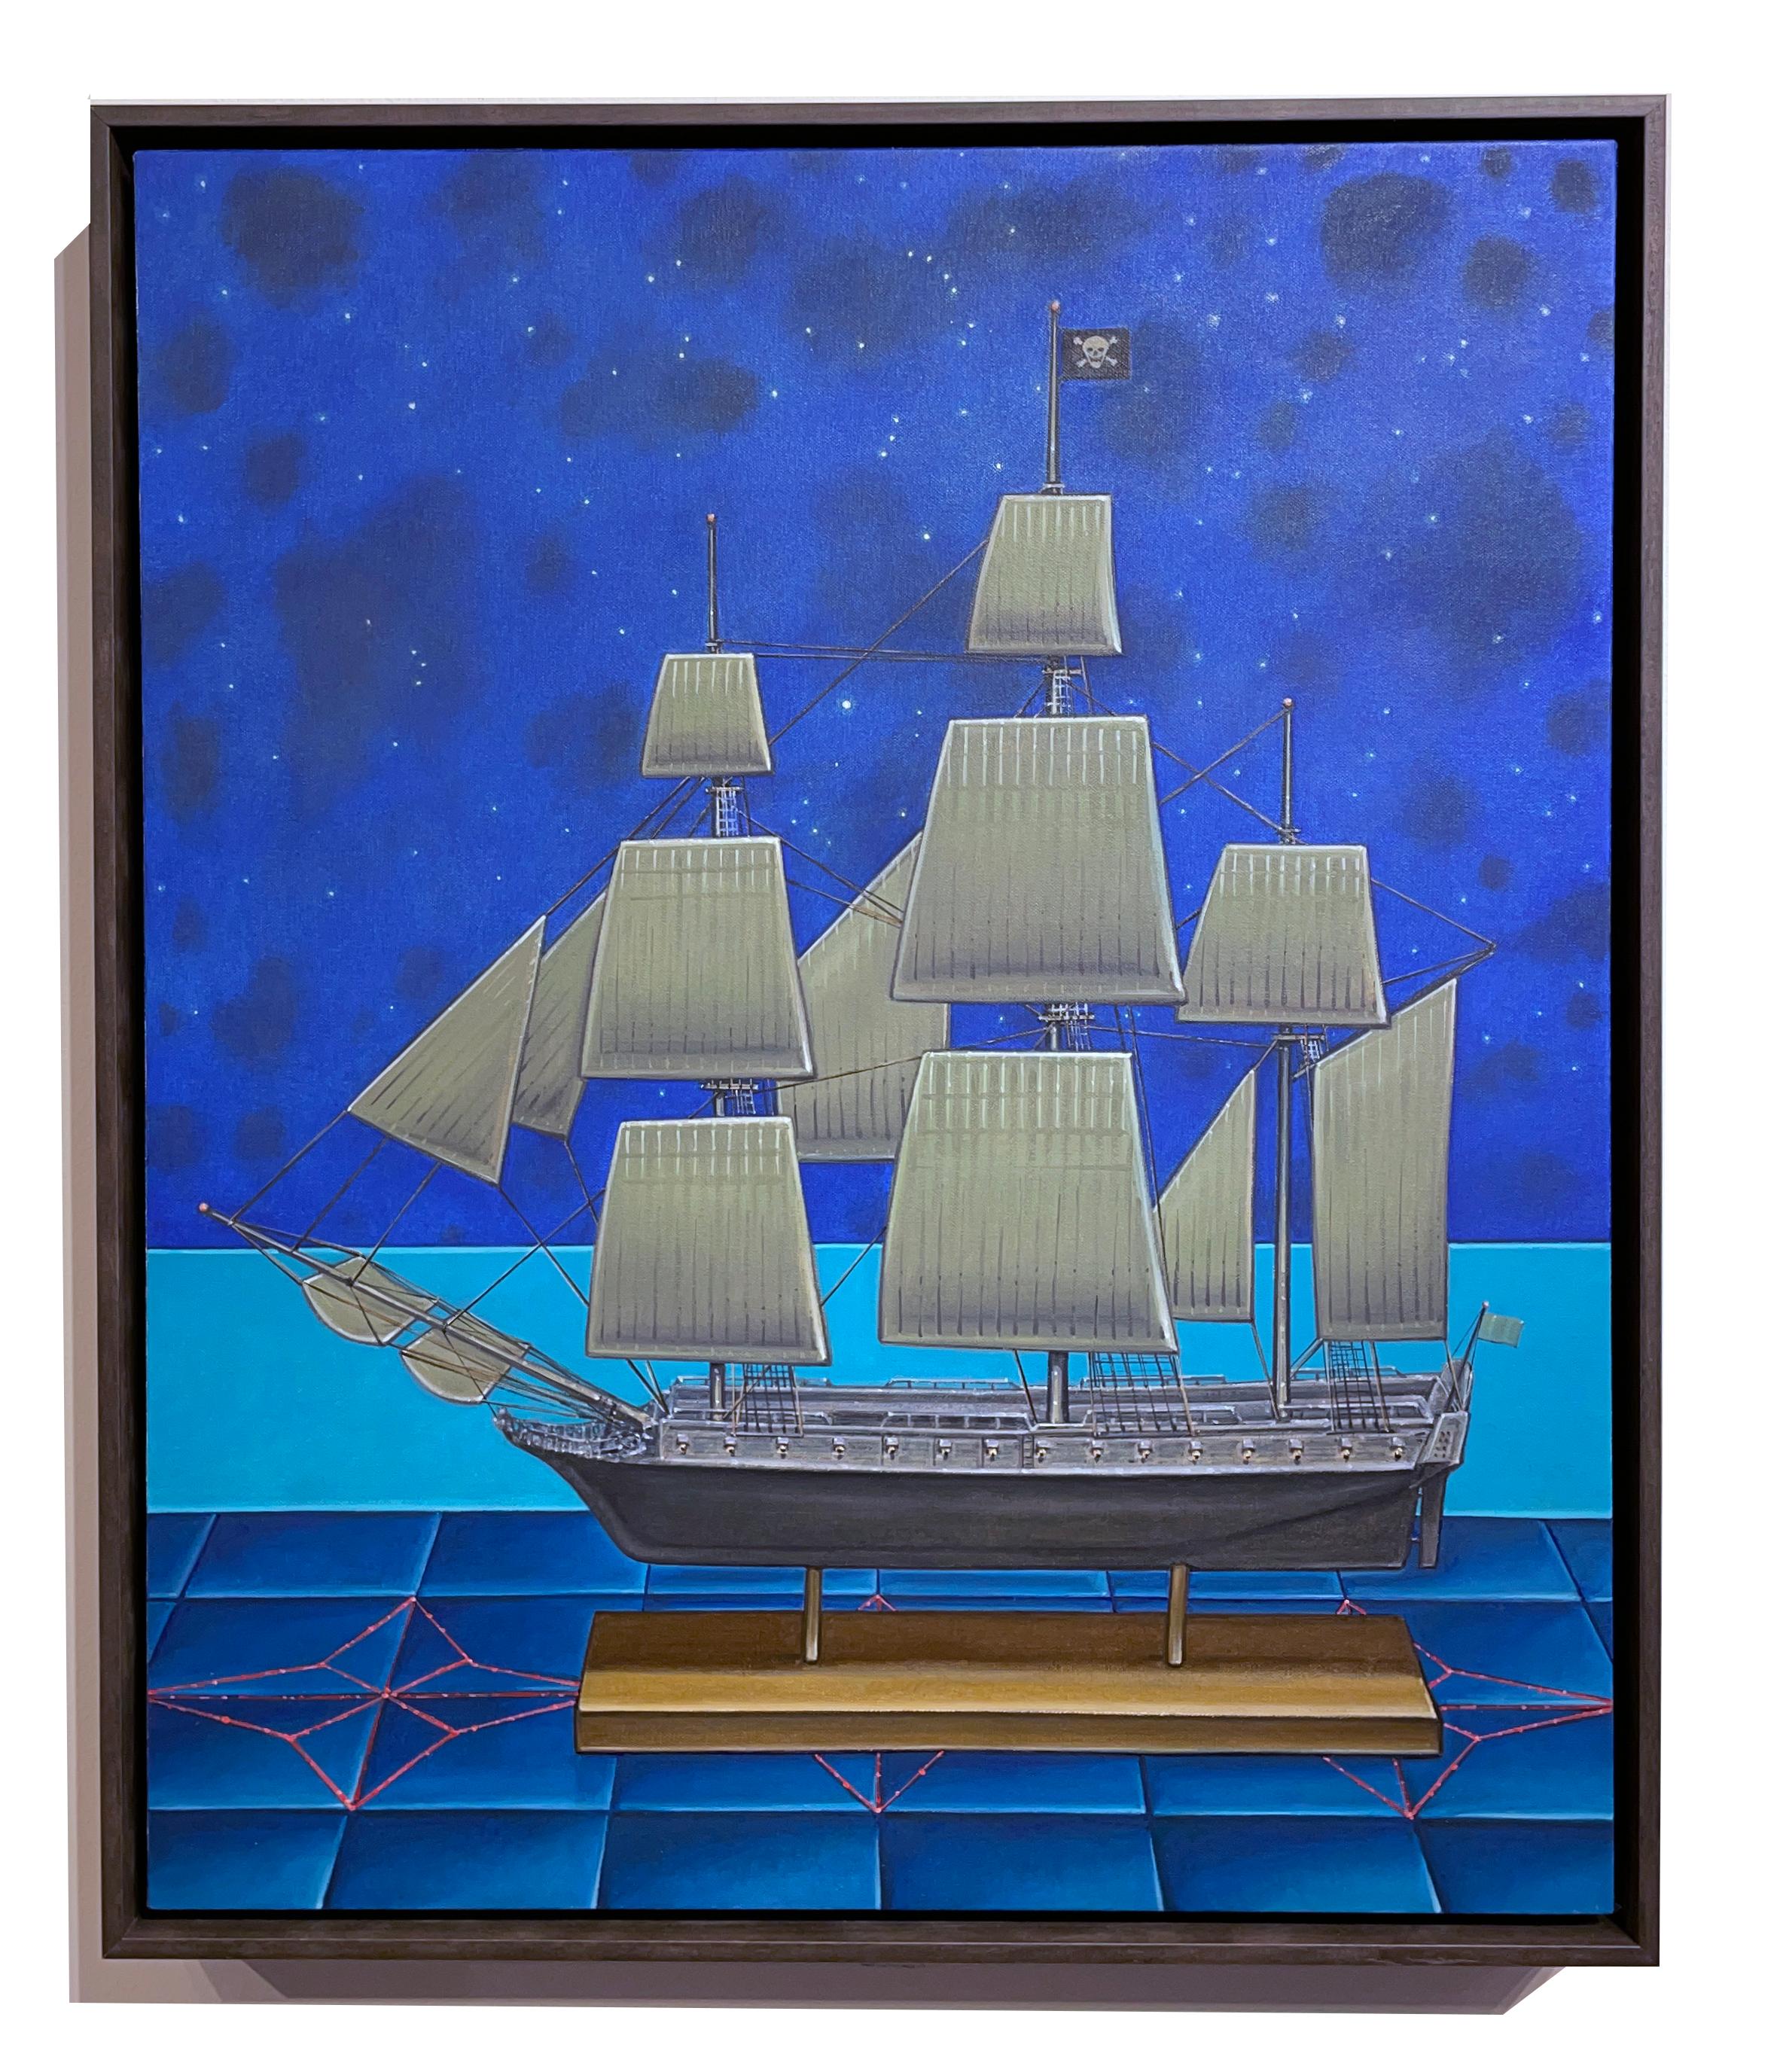 Croix de nuit -  Modèle réduit de navire de pirate et de constellations, huile sur panneau - Painting de John Hrehov